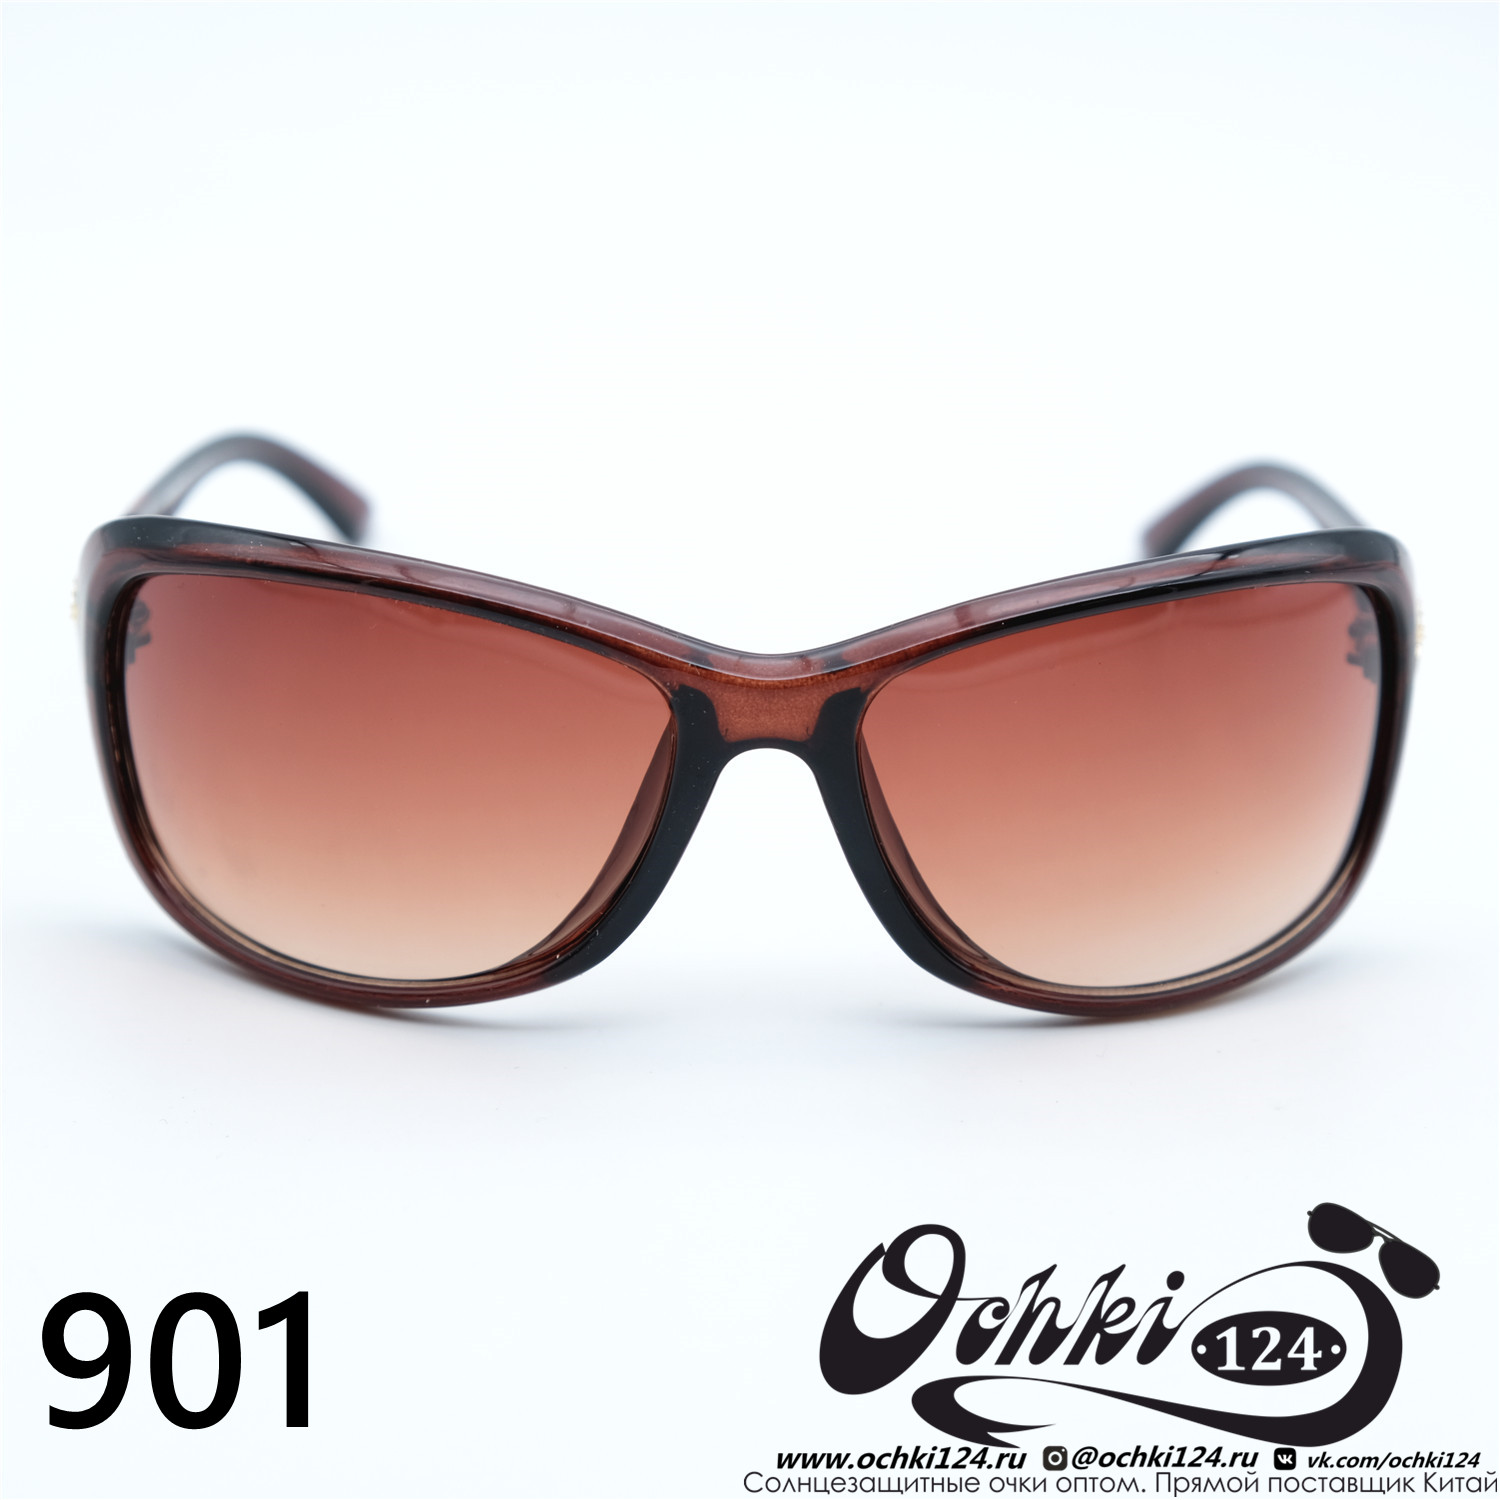  Солнцезащитные очки картинка Женские Prius  Стандартные 901-C2 